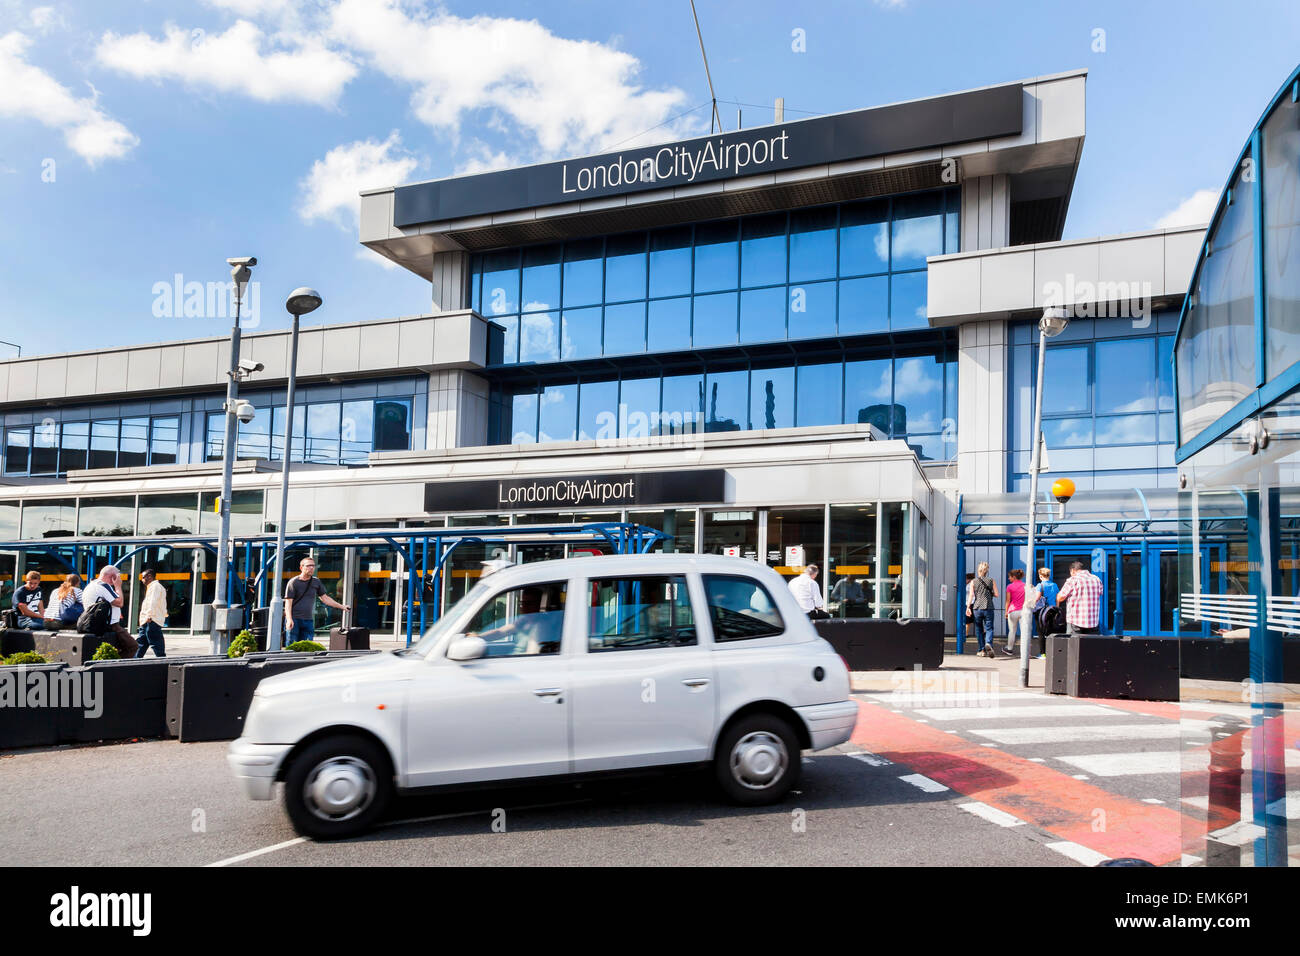 L'aéroport de London City, Londres, Angleterre, Royaume-Uni Banque D'Images